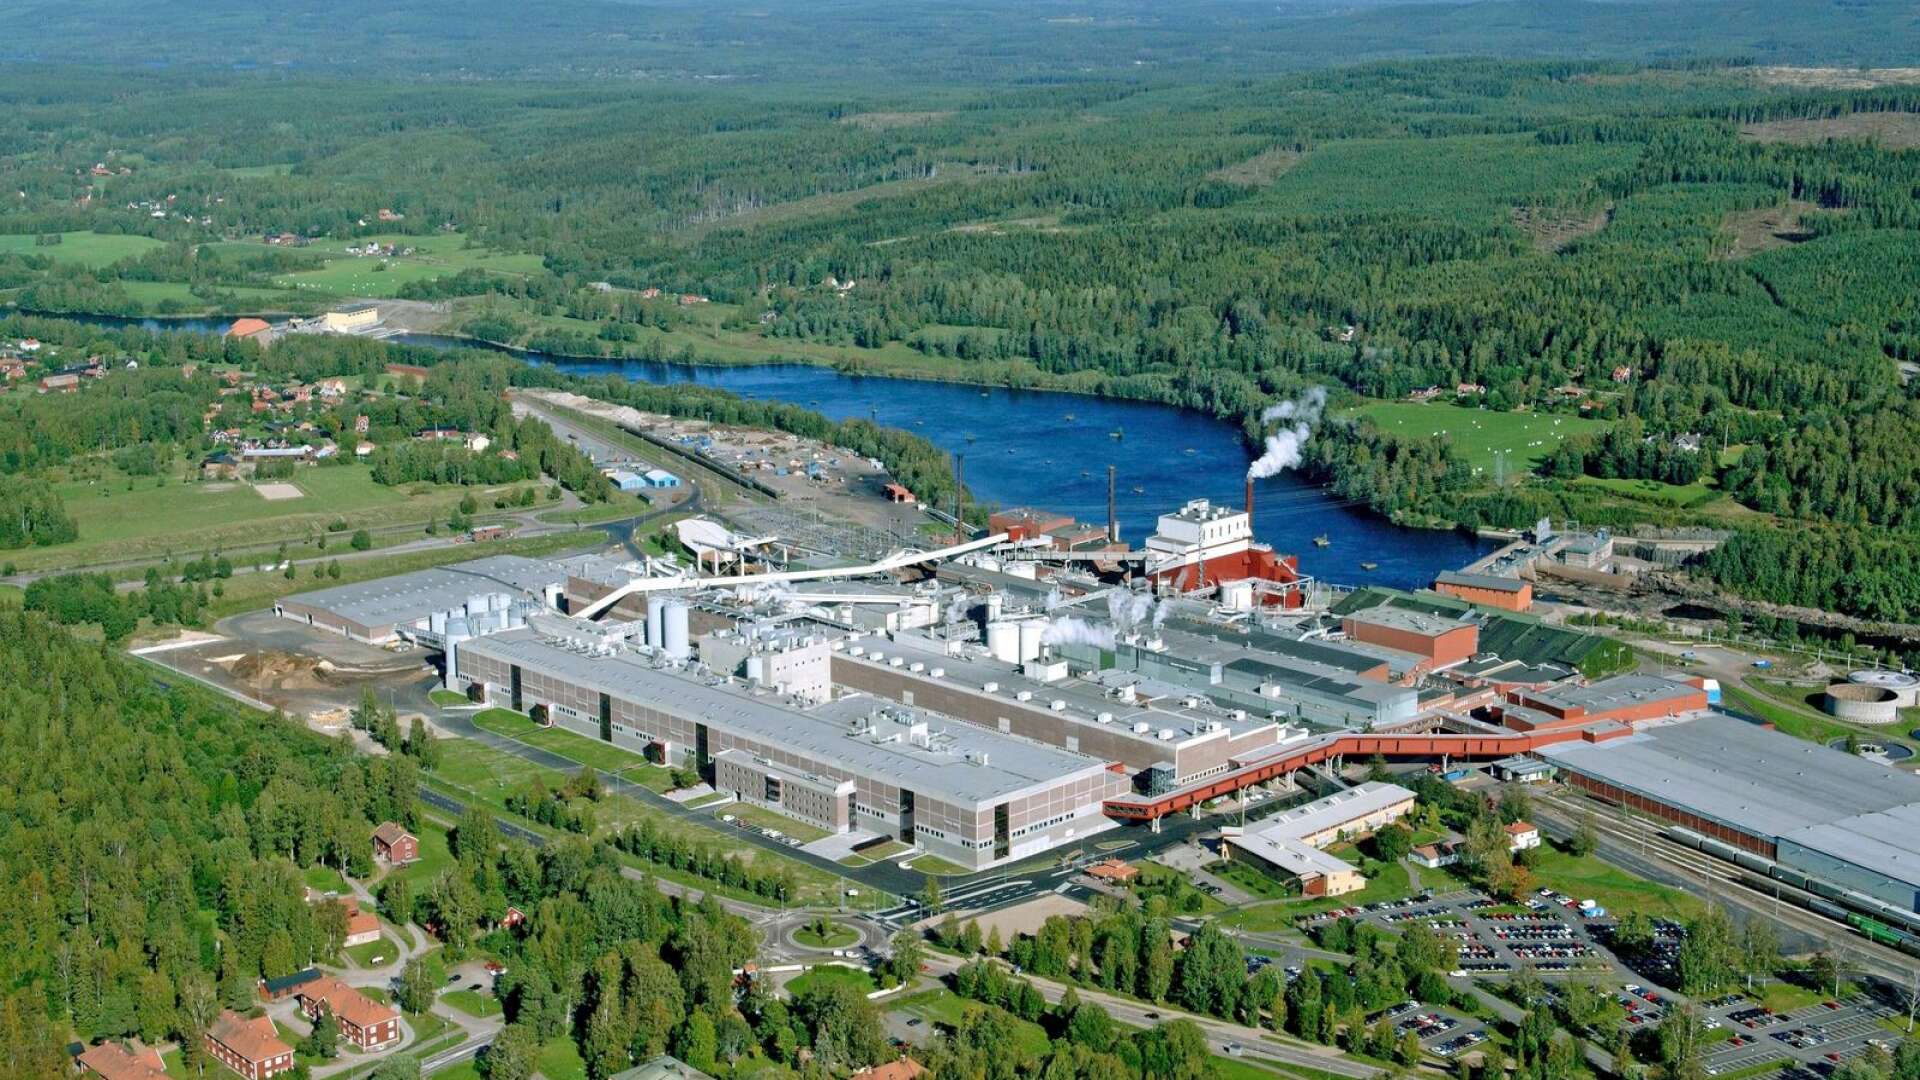 Bruket anlades vid Kvarnsvedsforsen för att kunna dra nytta av vattenkraften. Förnyelsebar energi innan det blev trendigt med andra ord, skriver Lars Anders Johansson.